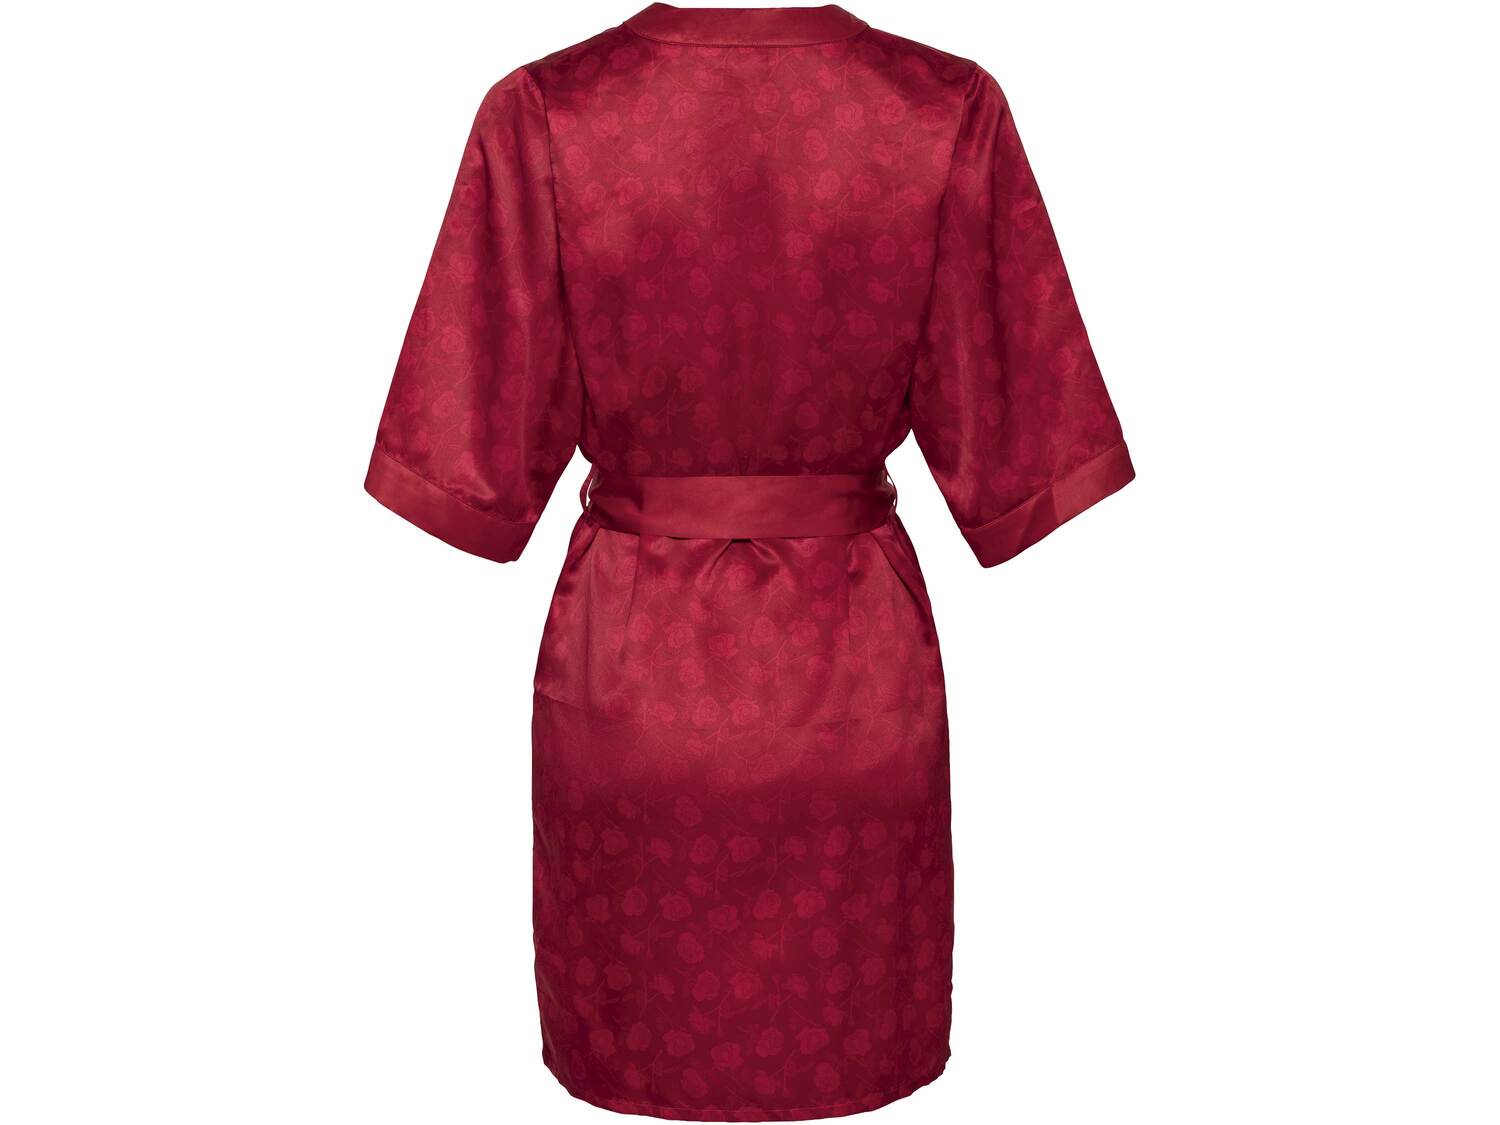 Kimono satynowe Esmara Lingerie, cena 34,99 PLN 
- rozmiary: S-L
- wykończone zmysłową ...